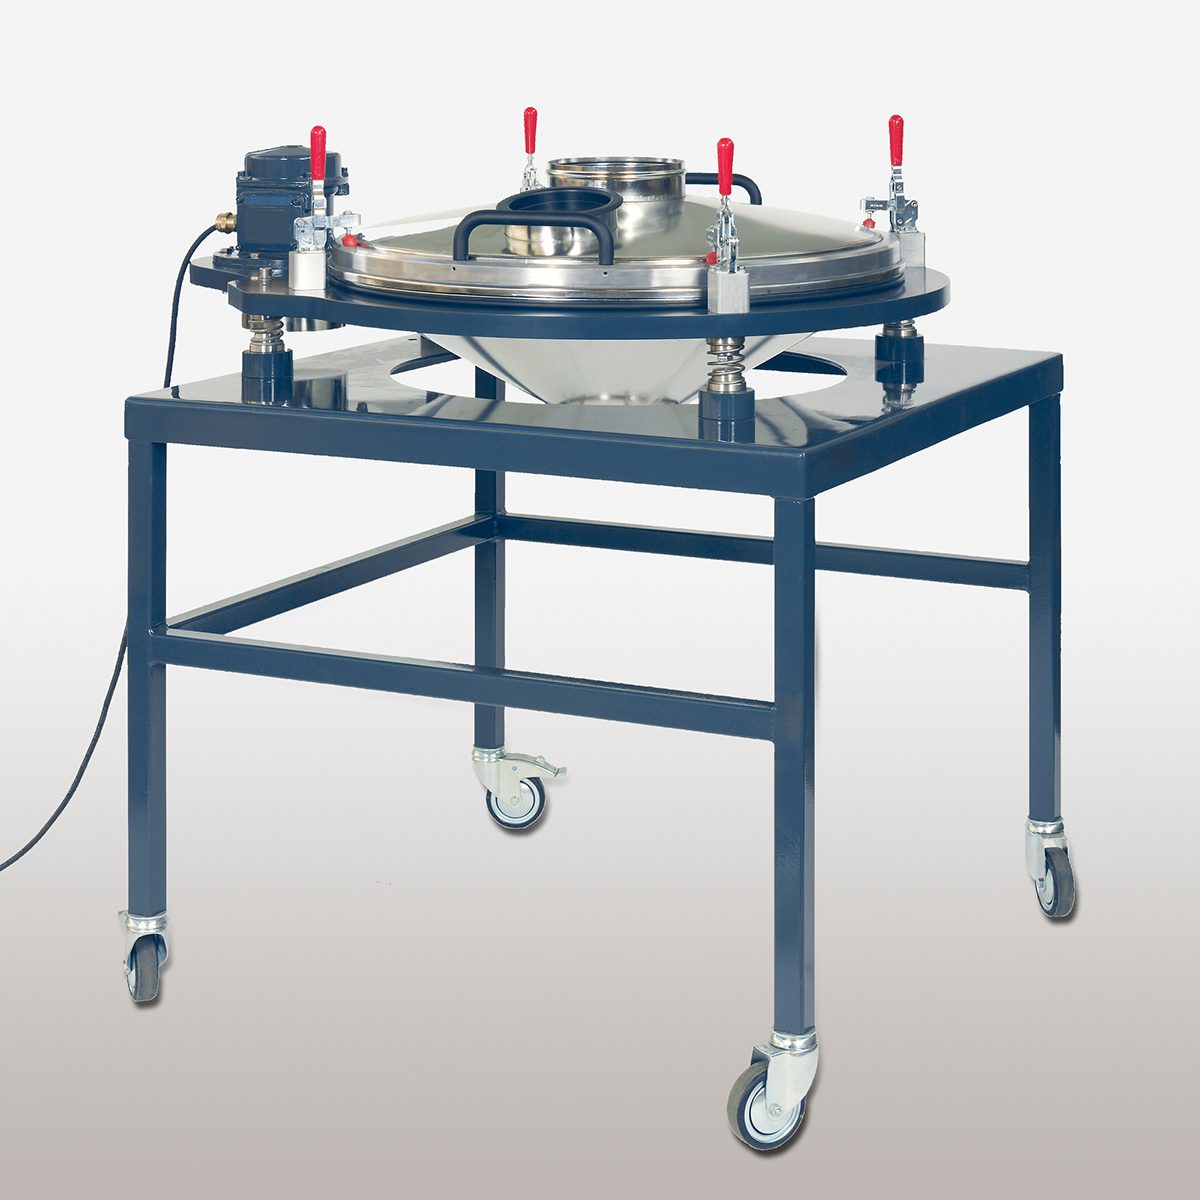 Kontrollsiebmaschine PERFLUX 801 zum Entfernen von Fremdstoffen und auf fahrbarem Untergestell